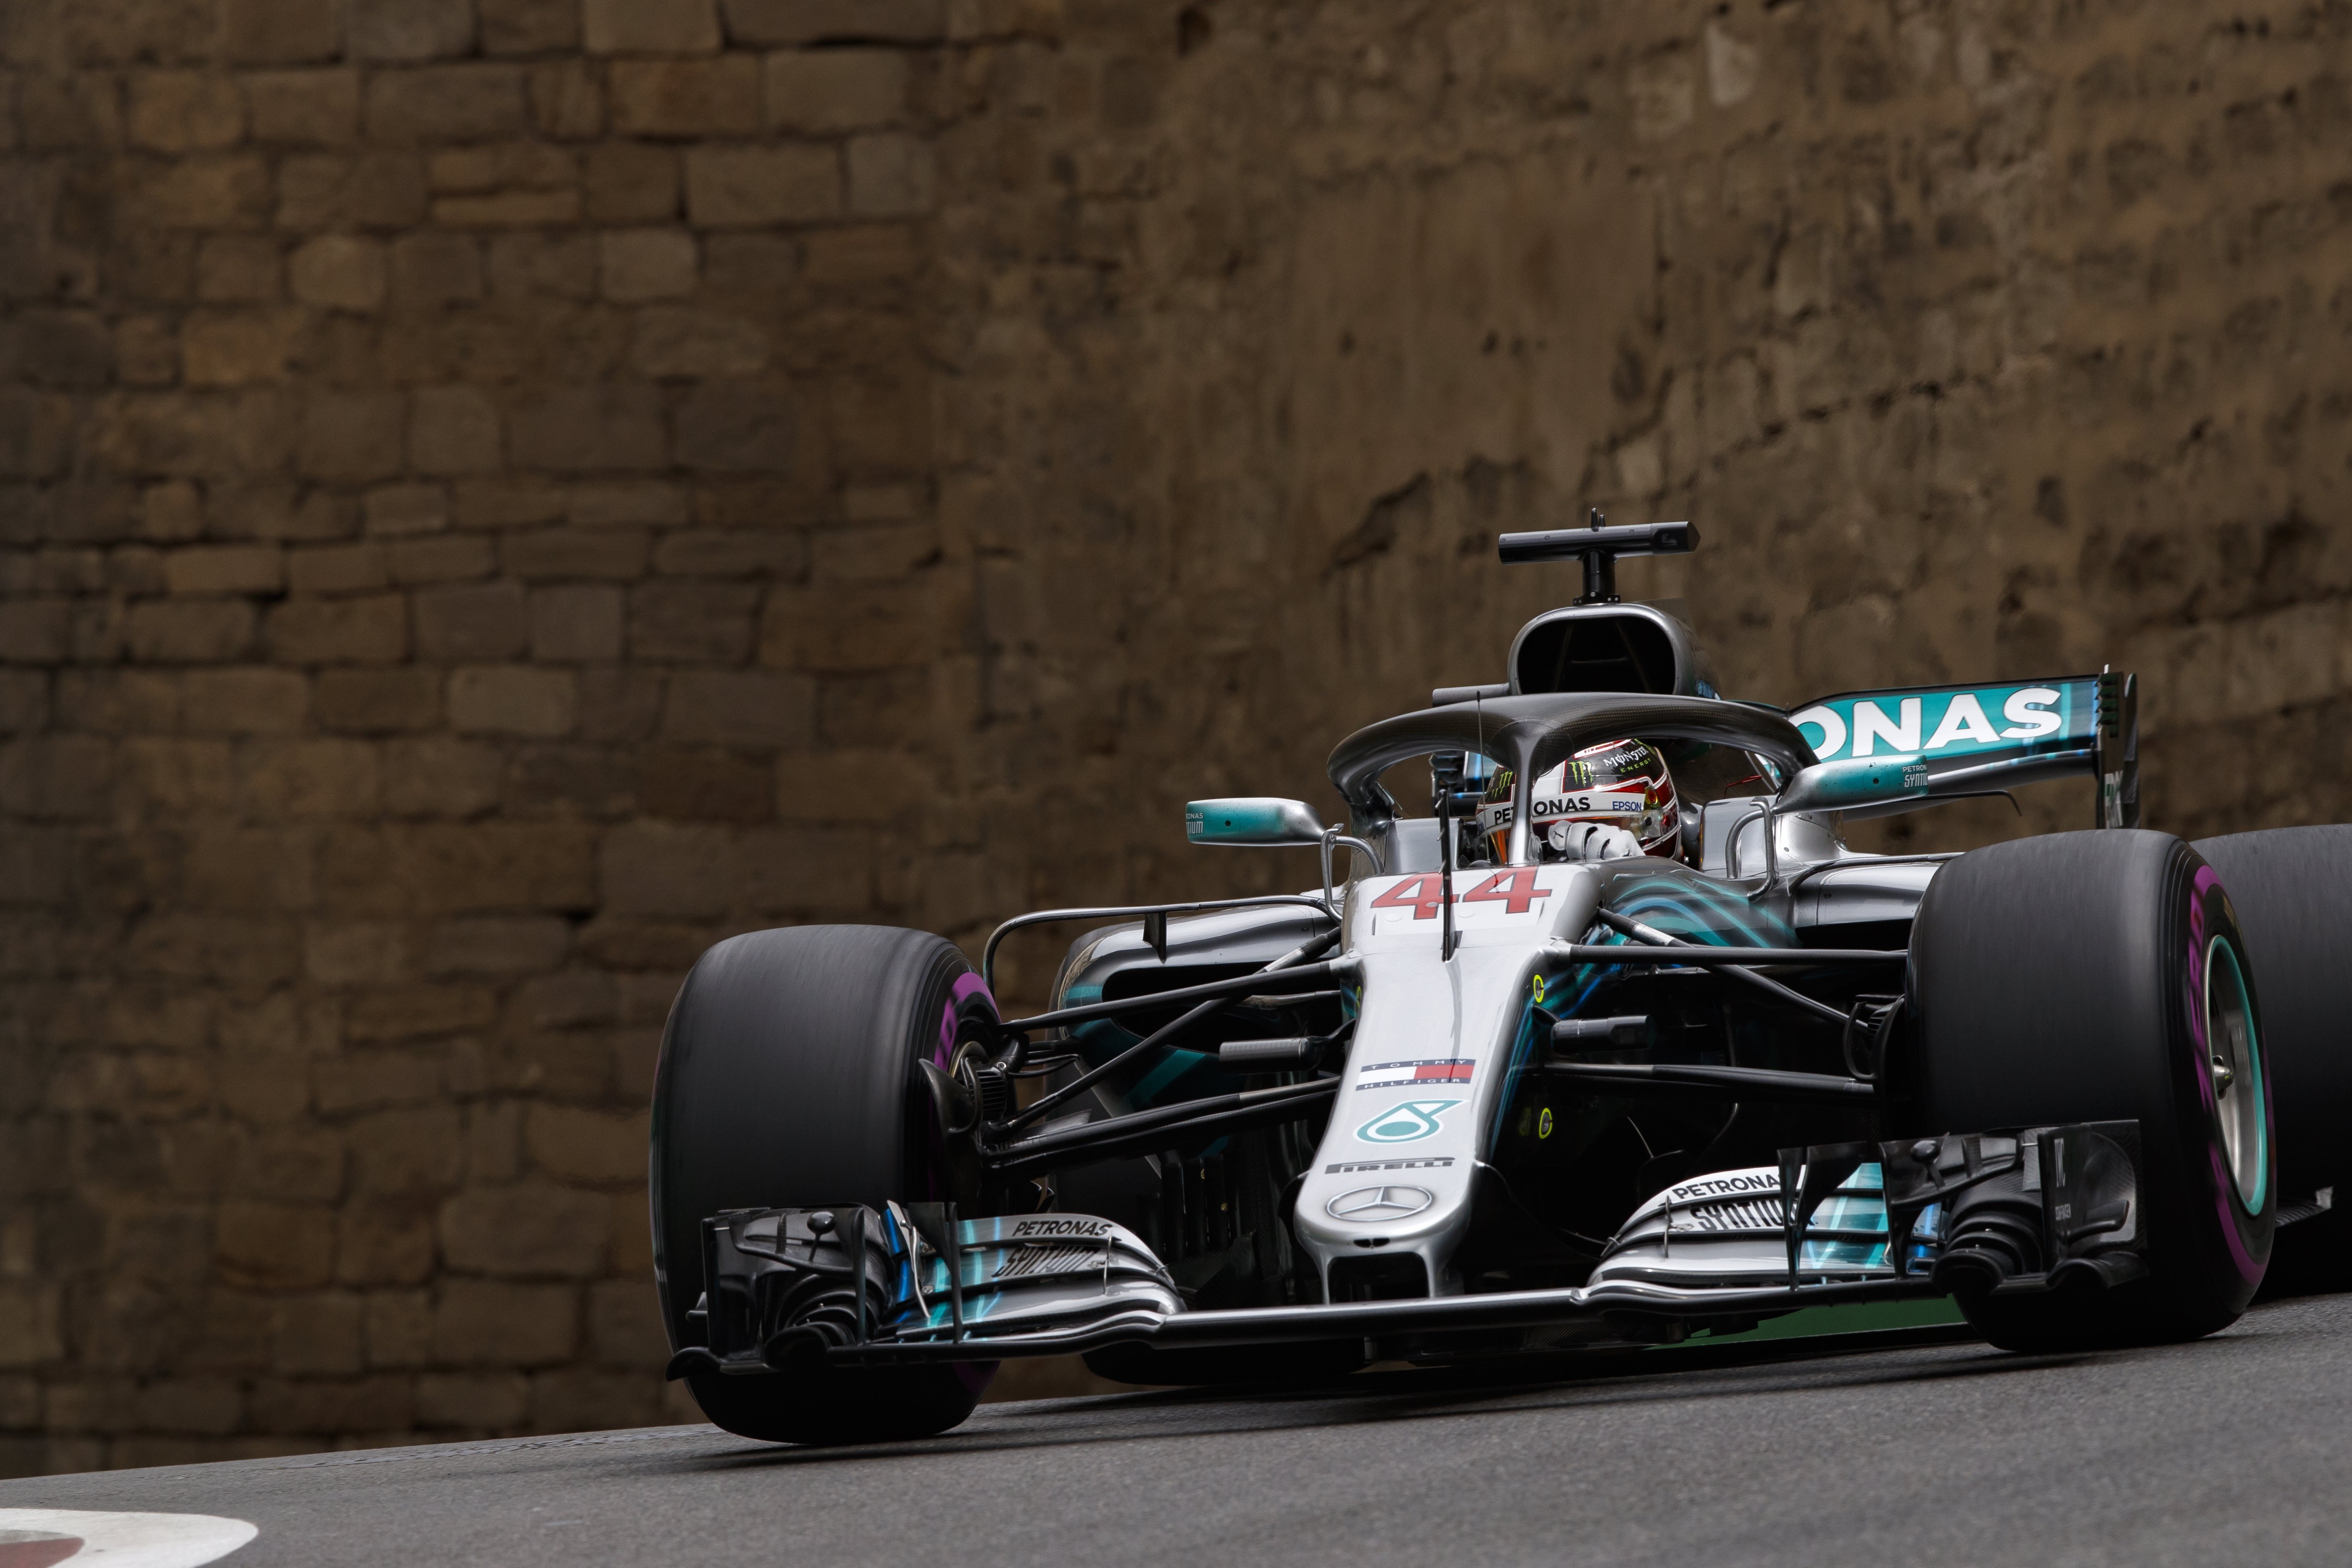 Hamilton vence GP do Azerbaijão e é o novo líder do Mundial de Fórmula 1